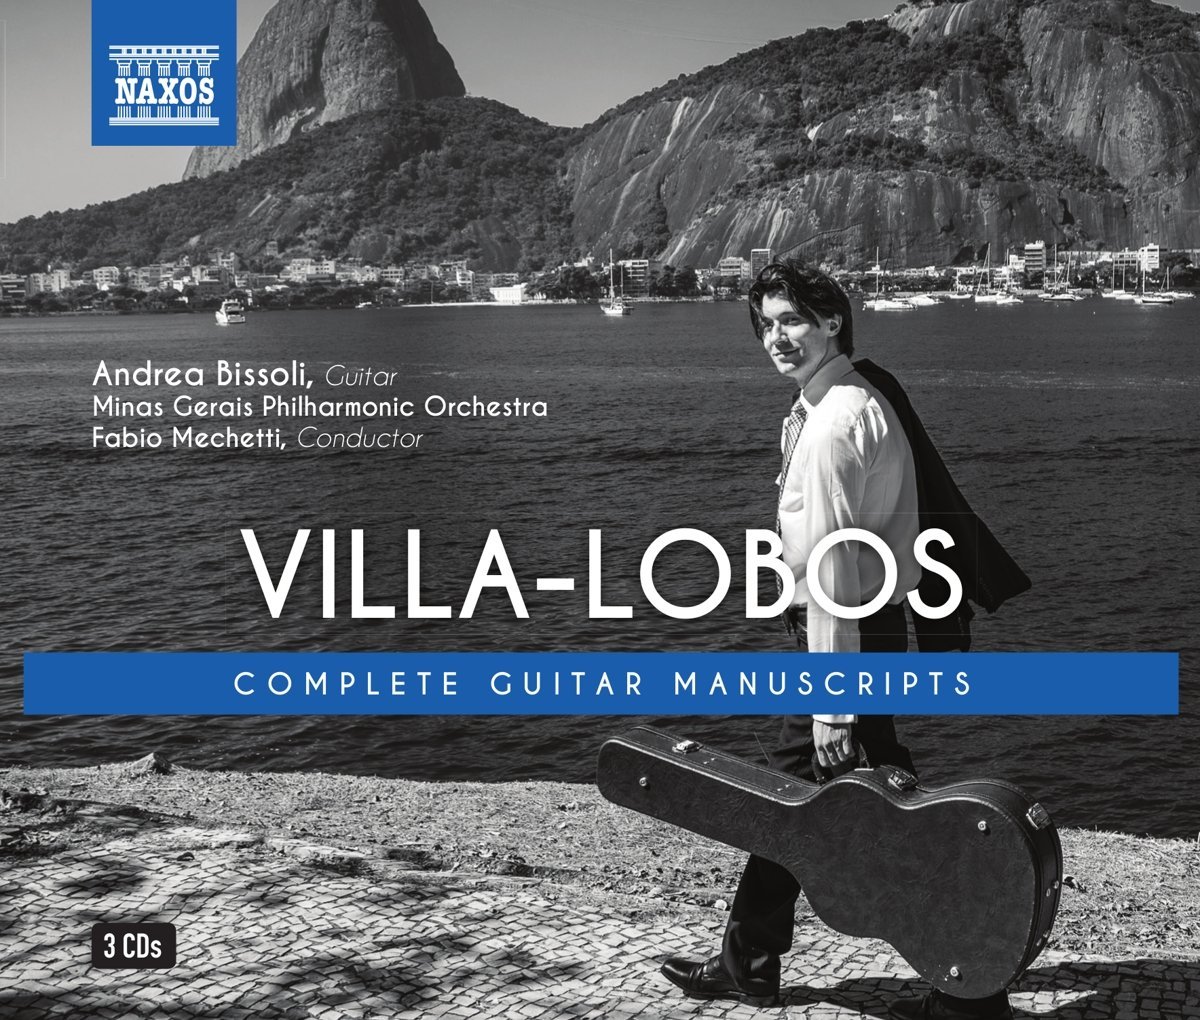 Audio Cd Heitor Villa-Lobos - Complete Guitar Manuscripts (3 Cd) NUOVO SIGILLATO, EDIZIONE DEL 15/10/2016 SUBITO DISPONIBILE